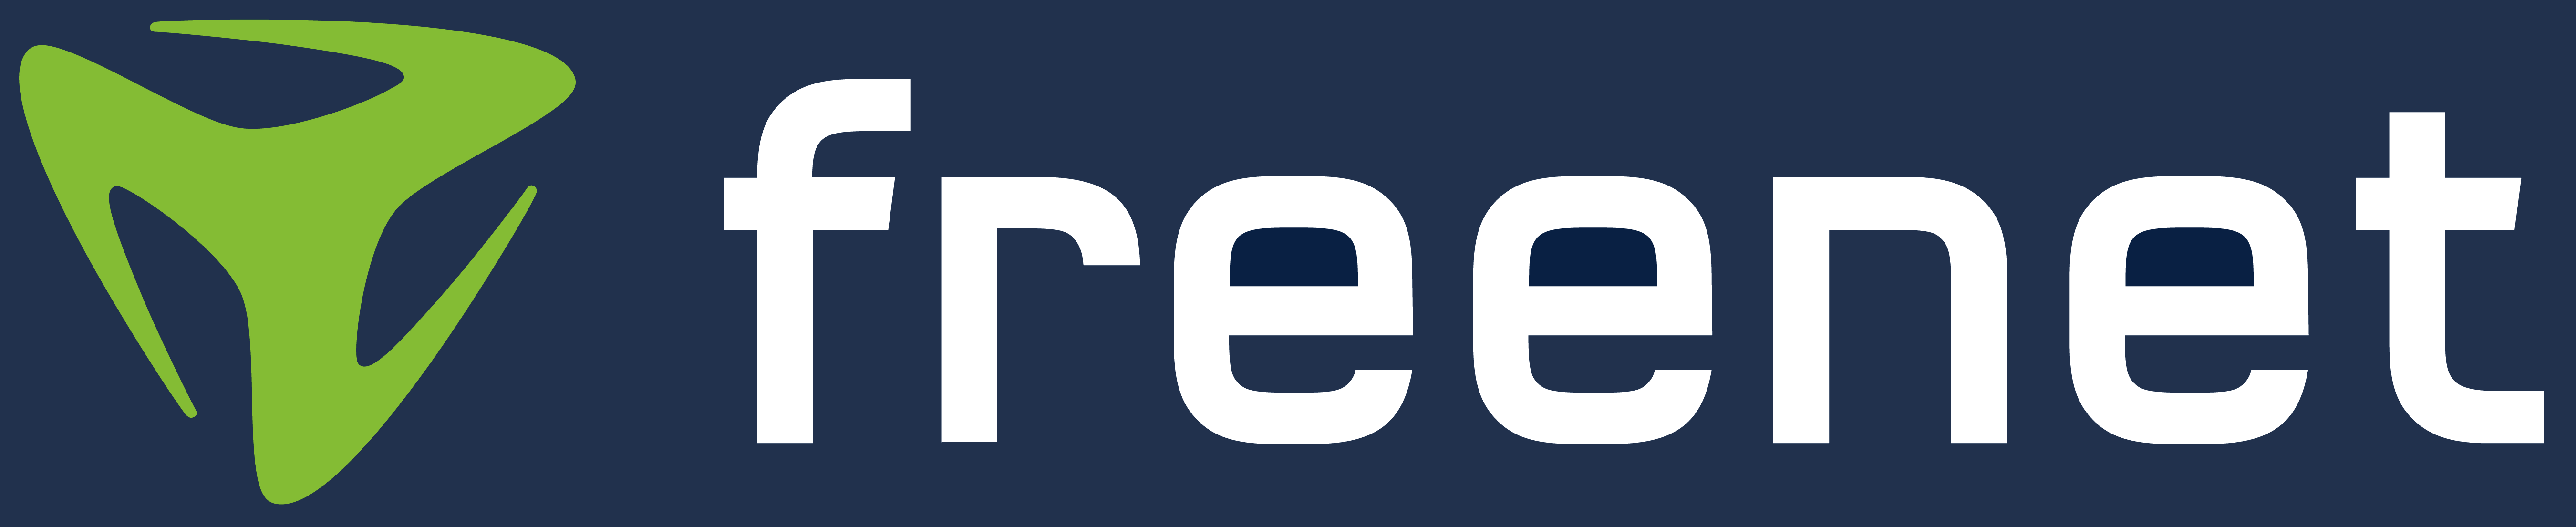 freenet_logo_de.png